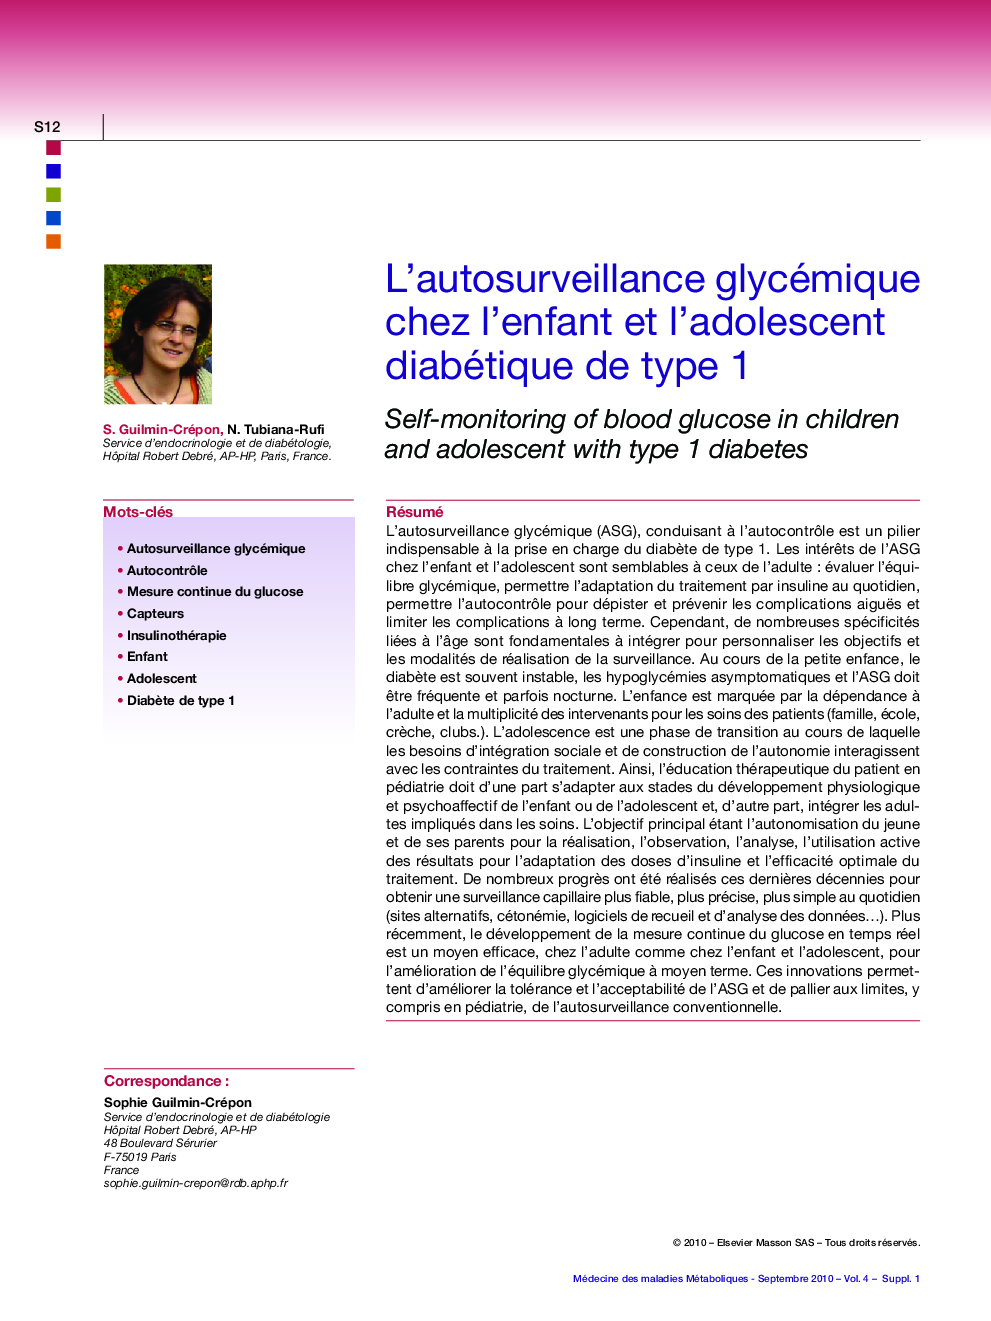 L'autosurveillance glycémique chez l'enfant et l'adolescent diabétique de type 1